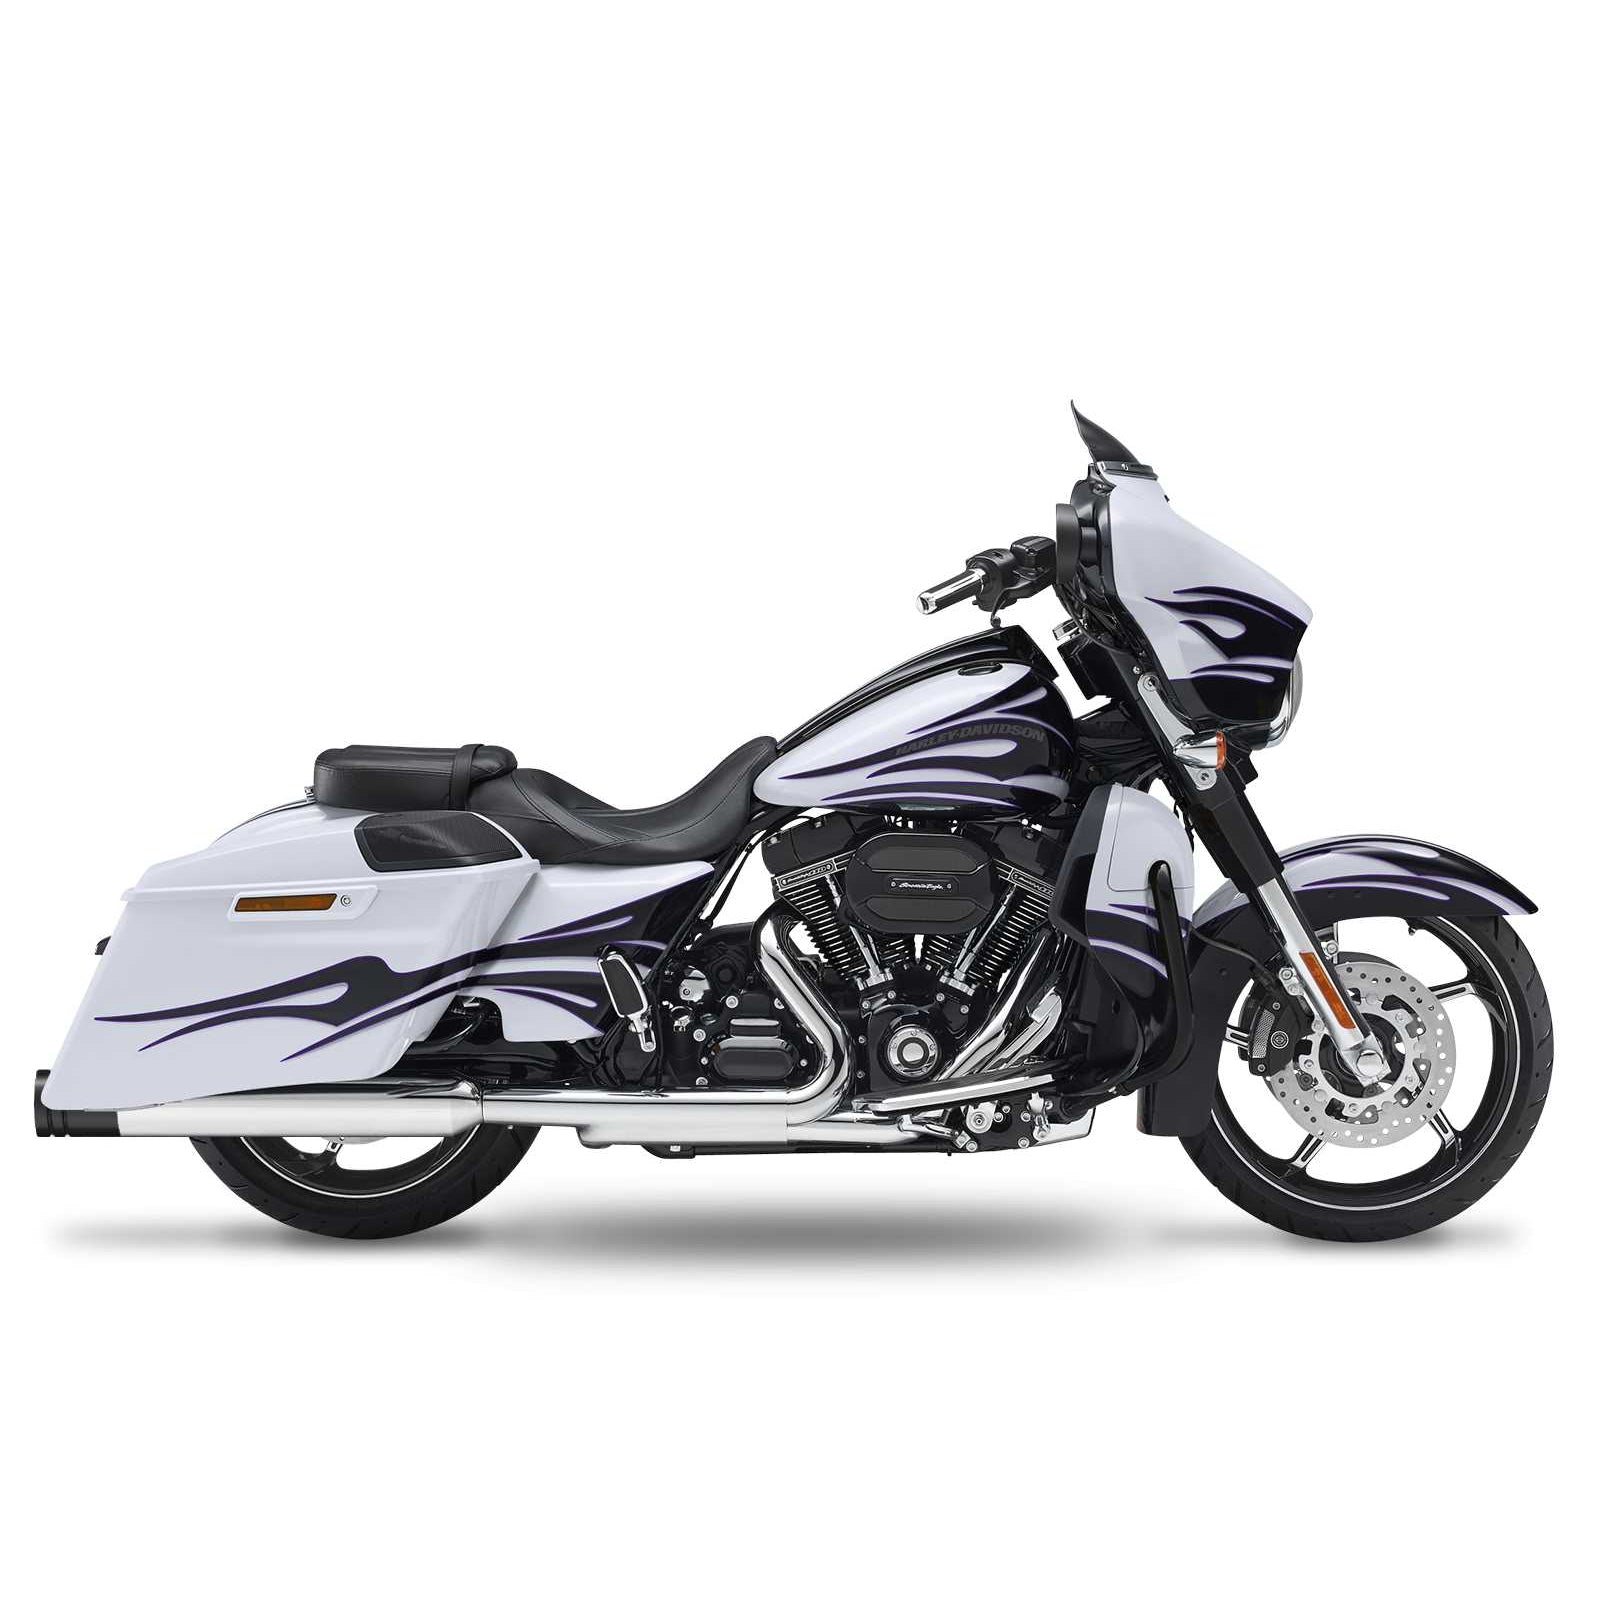 Кesstech 2018 Harley-Davidson Road Glide Special Slipons adjustable